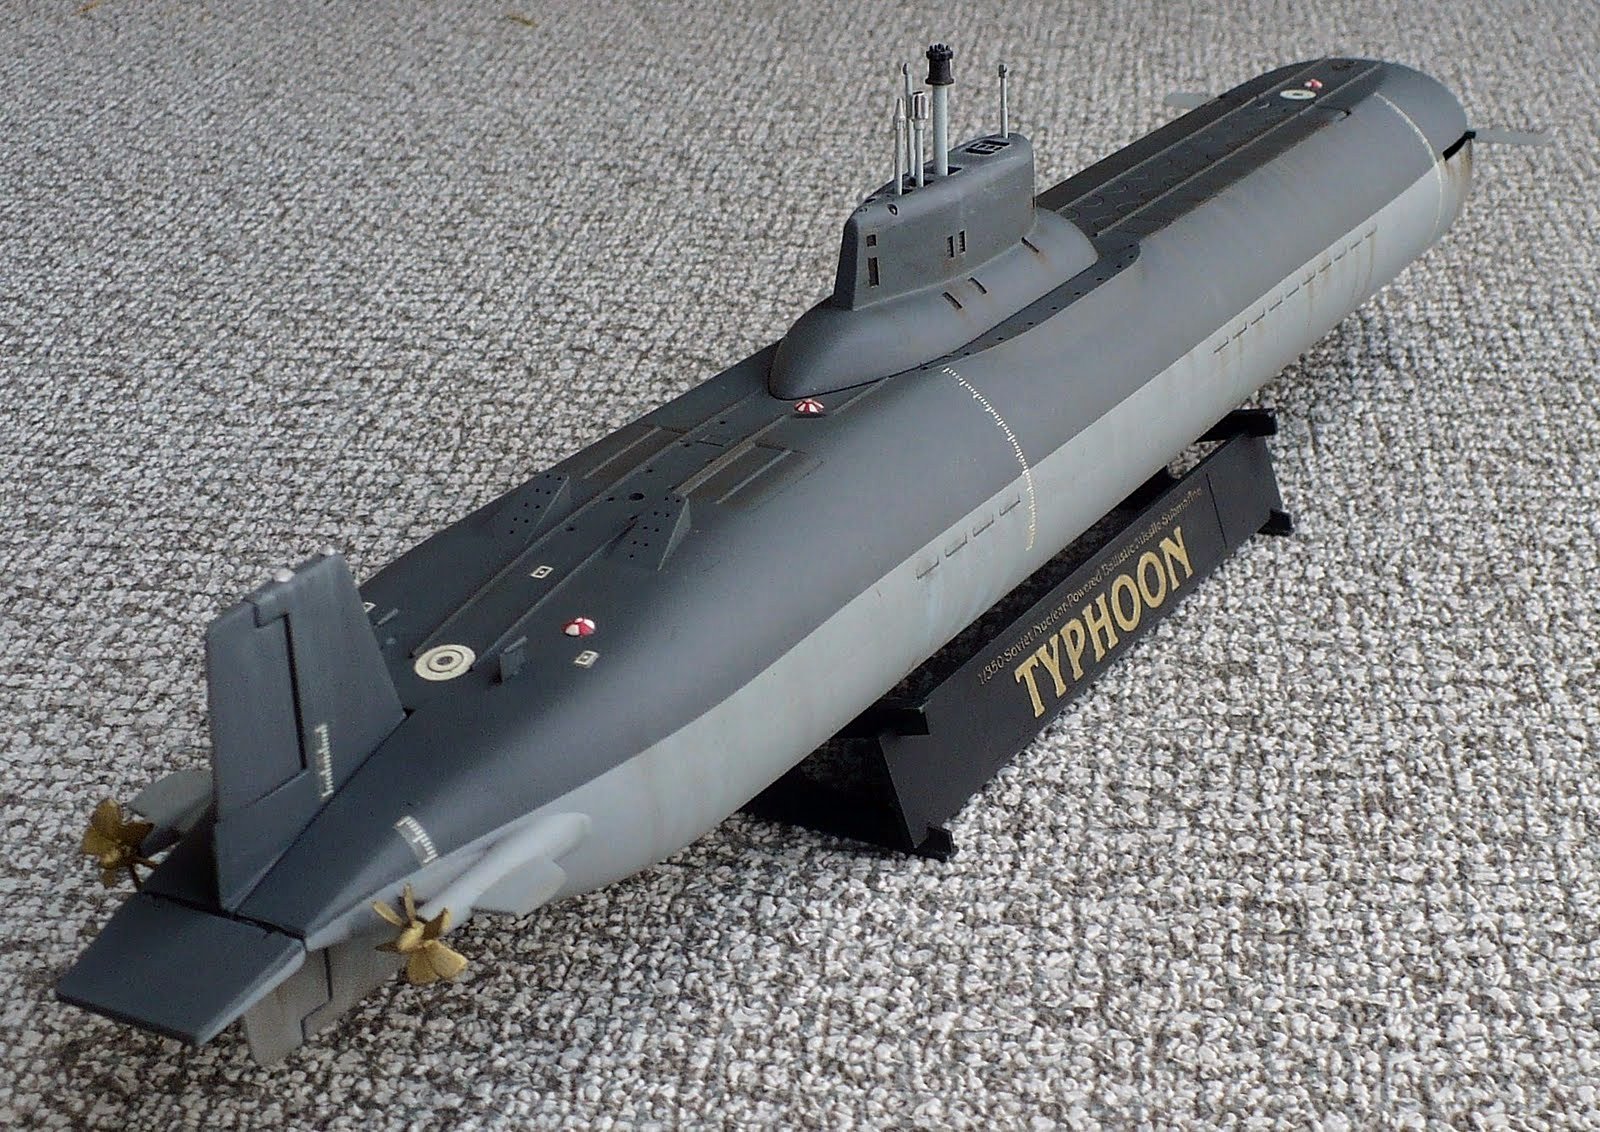 Класса тайфун. Подводная лодка Тайфун. Подводная лодка класса Тайфун. Атомная подводная лодка класса Тайфун. АПЛ ТК-20 Северсталь.